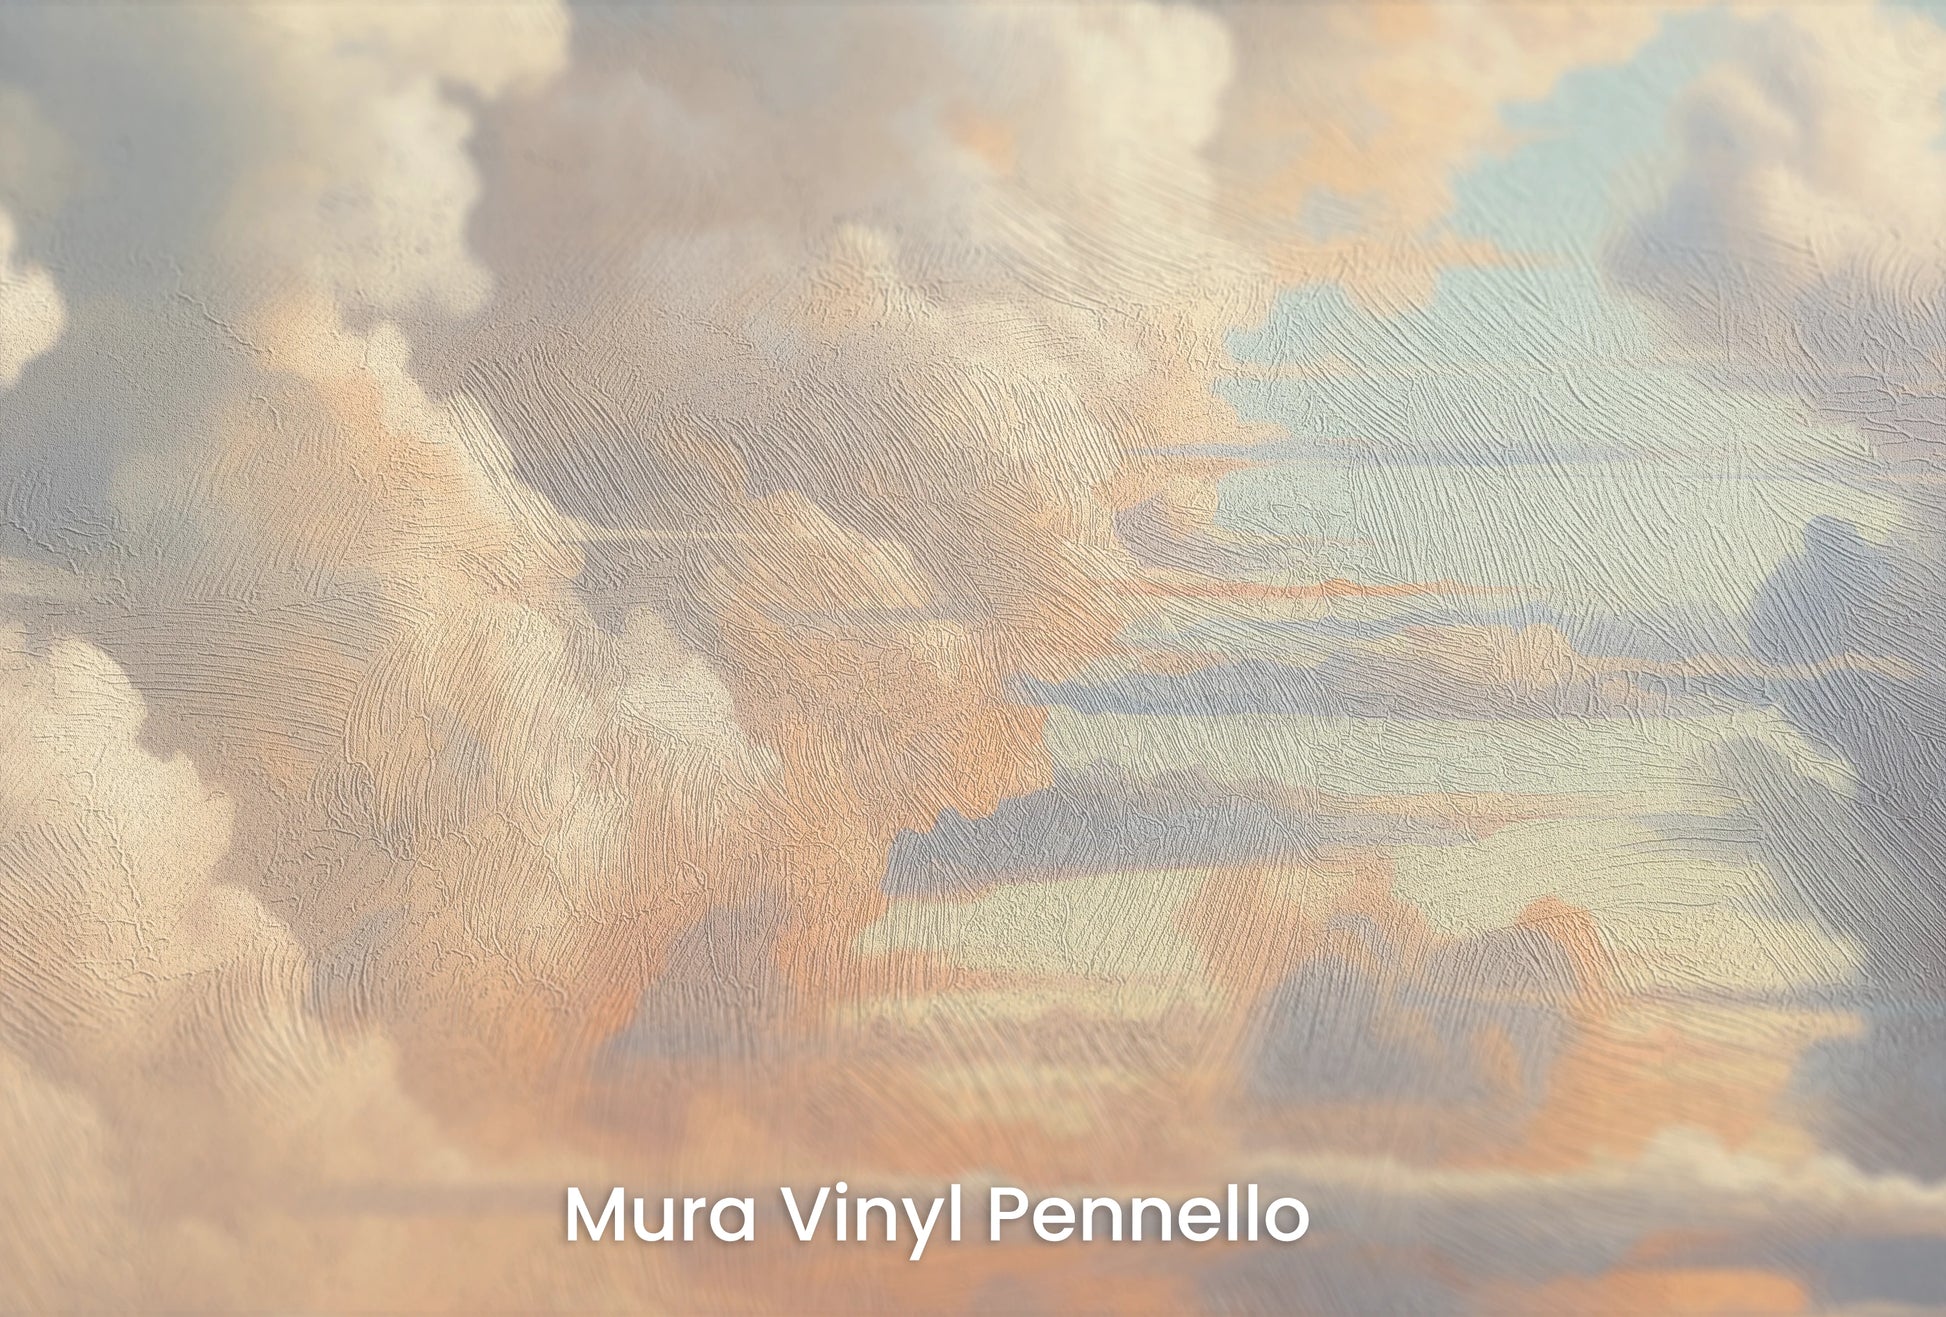 Zbliżenie na artystyczną fototapetę o nazwie Skies Ablaze na podłożu Mura Vinyl Pennello - faktura pociągnięć pędzla malarskiego.